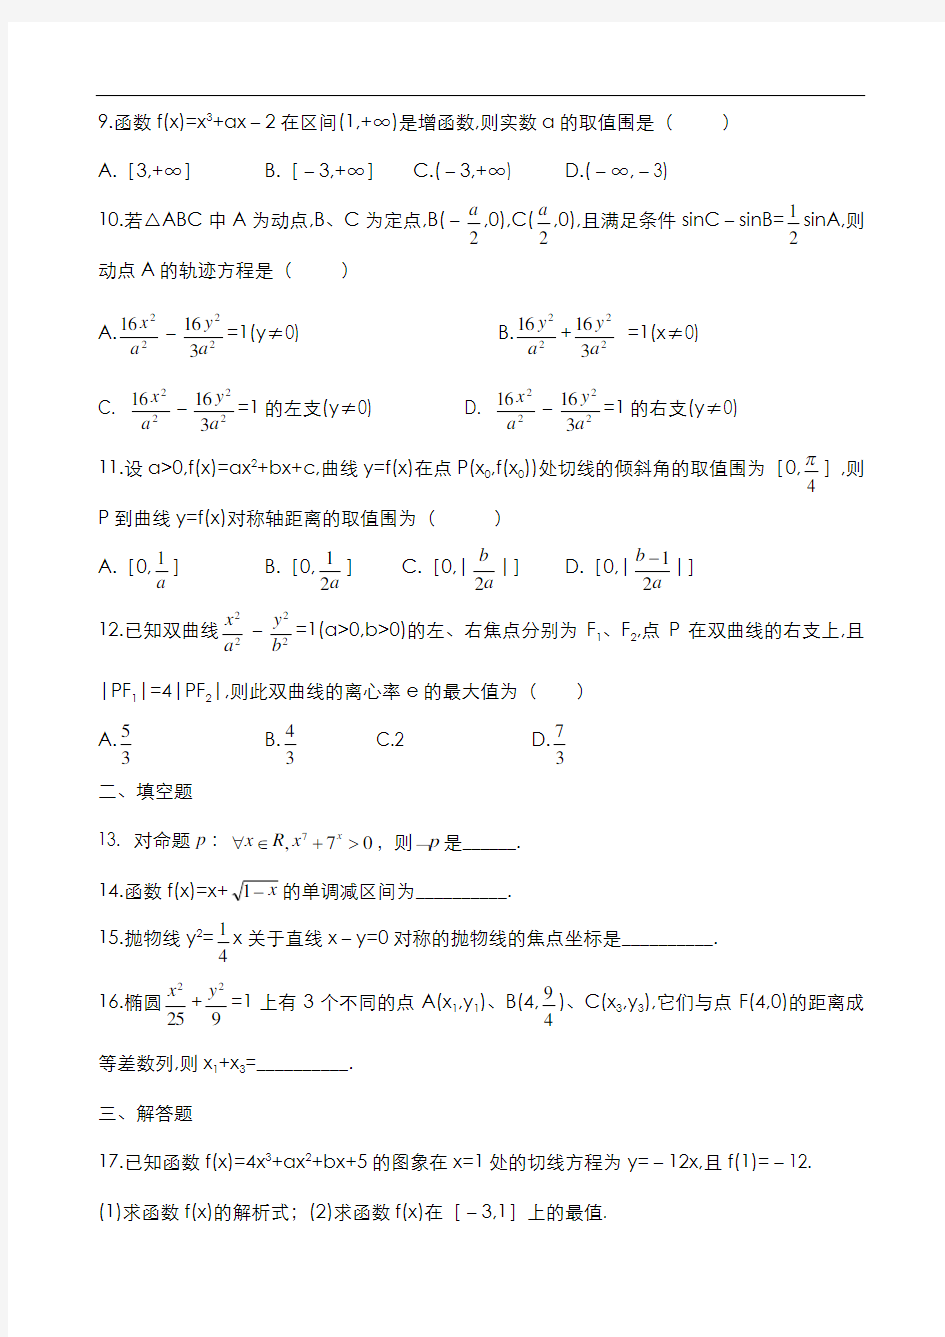 高中数学选修1-1综合测试题(打印版)